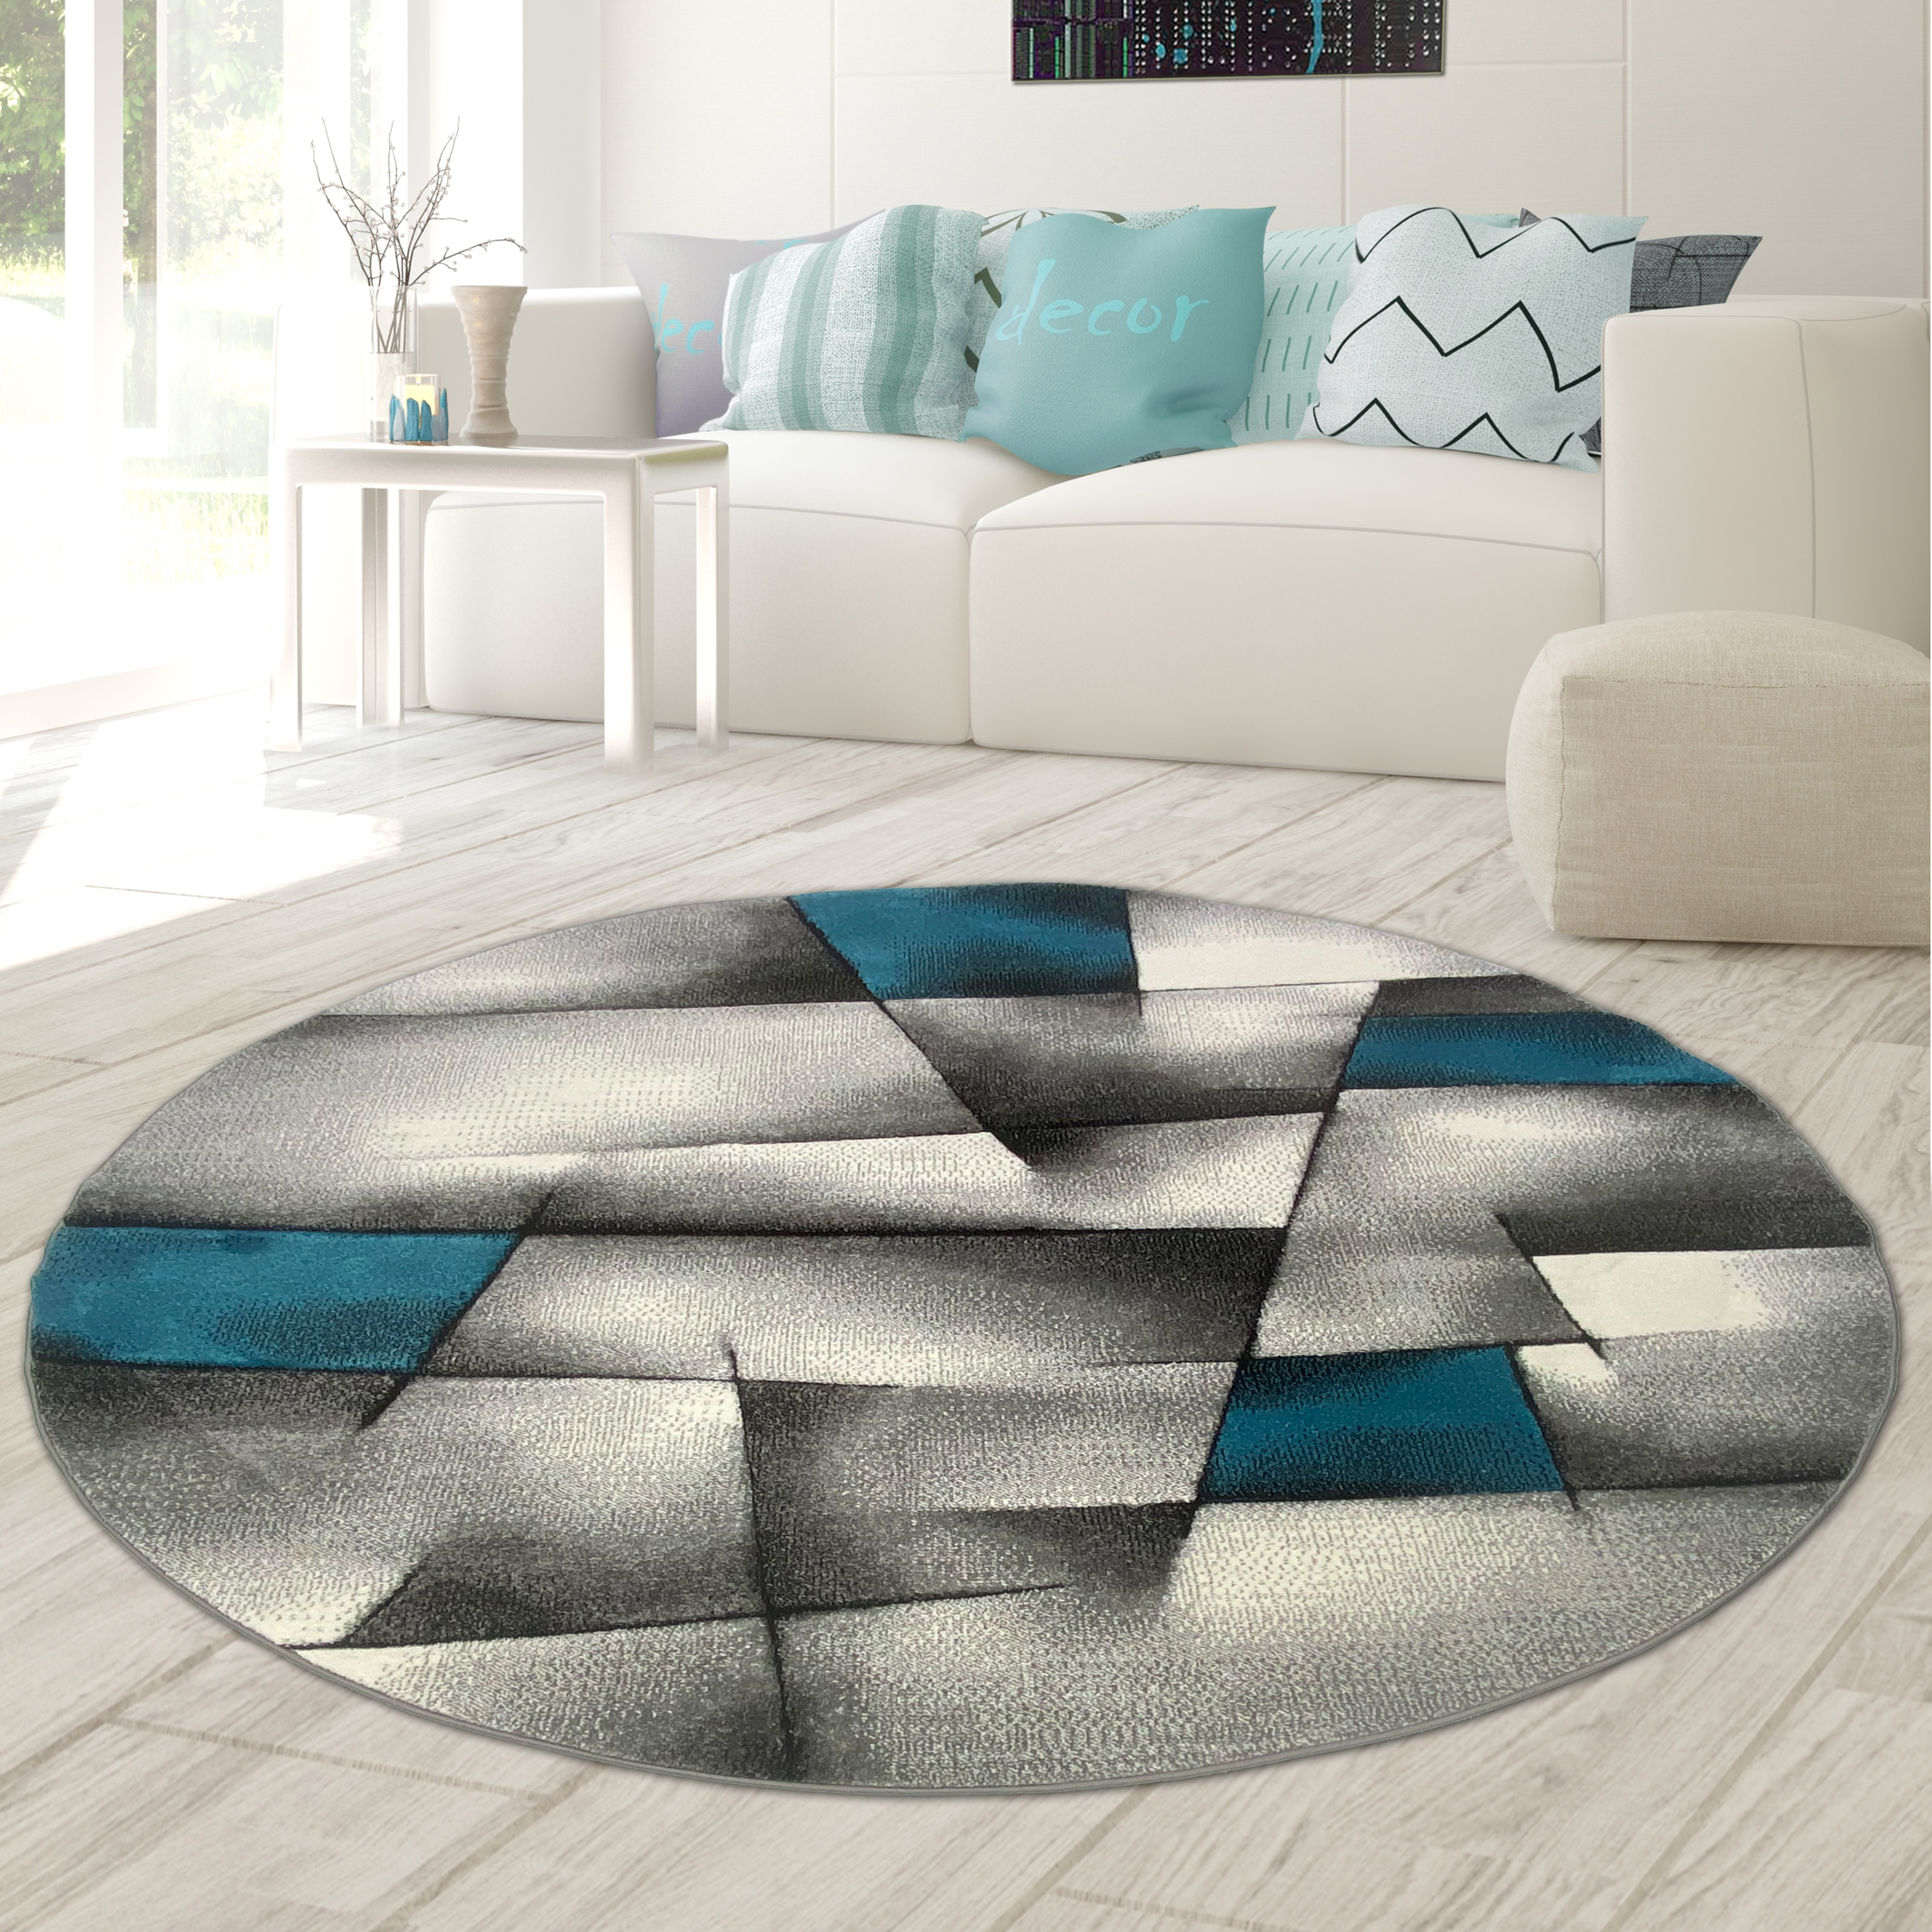 RUGMRZ Teppich Grau 200x300cm Blaues Print-Design im Retro-Stil  rechteckiger Wohnzimmer Teppich rutsch fest Teppiche, Dämm- & Schutzmatten